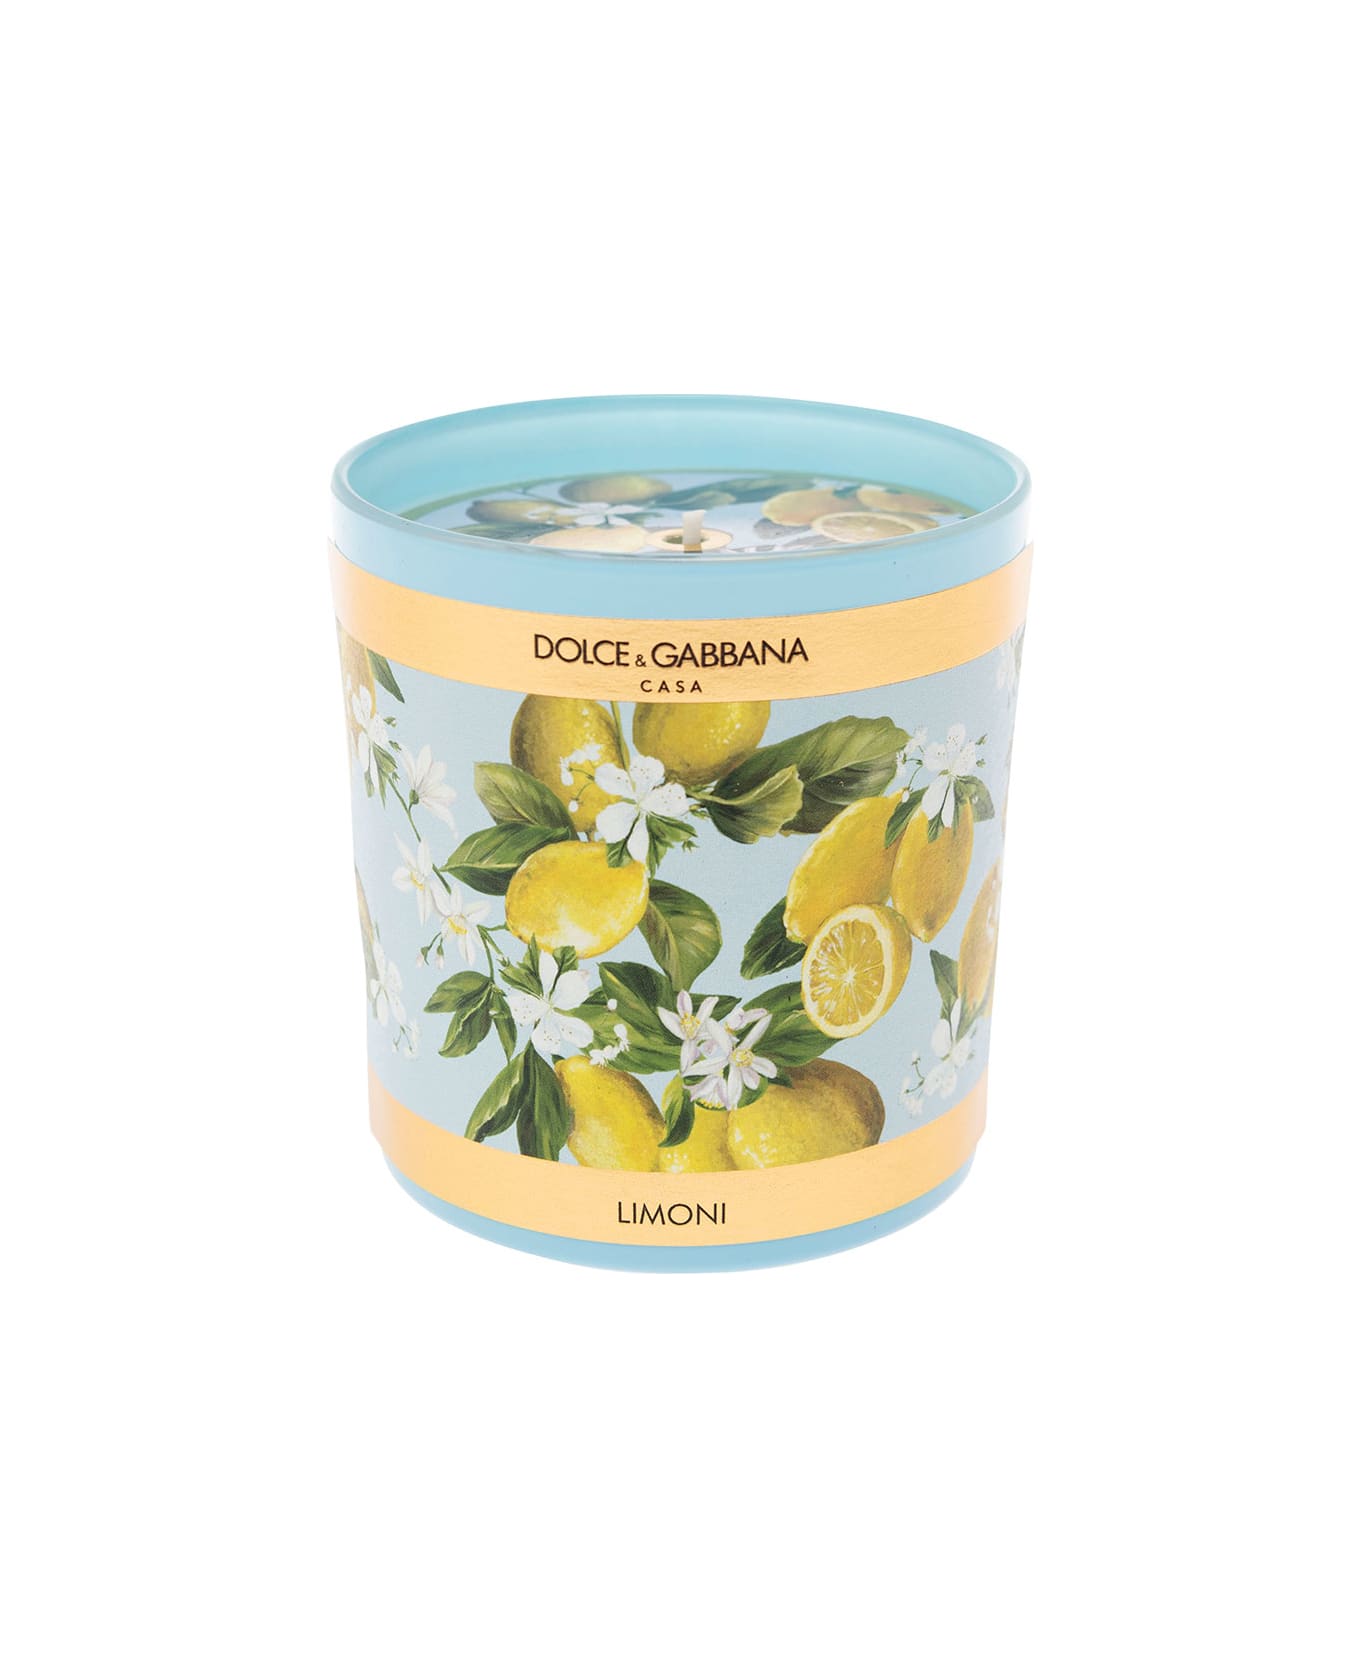 Dolce & Gabbana Lemon Scented Candle - Light blue インテリア雑貨